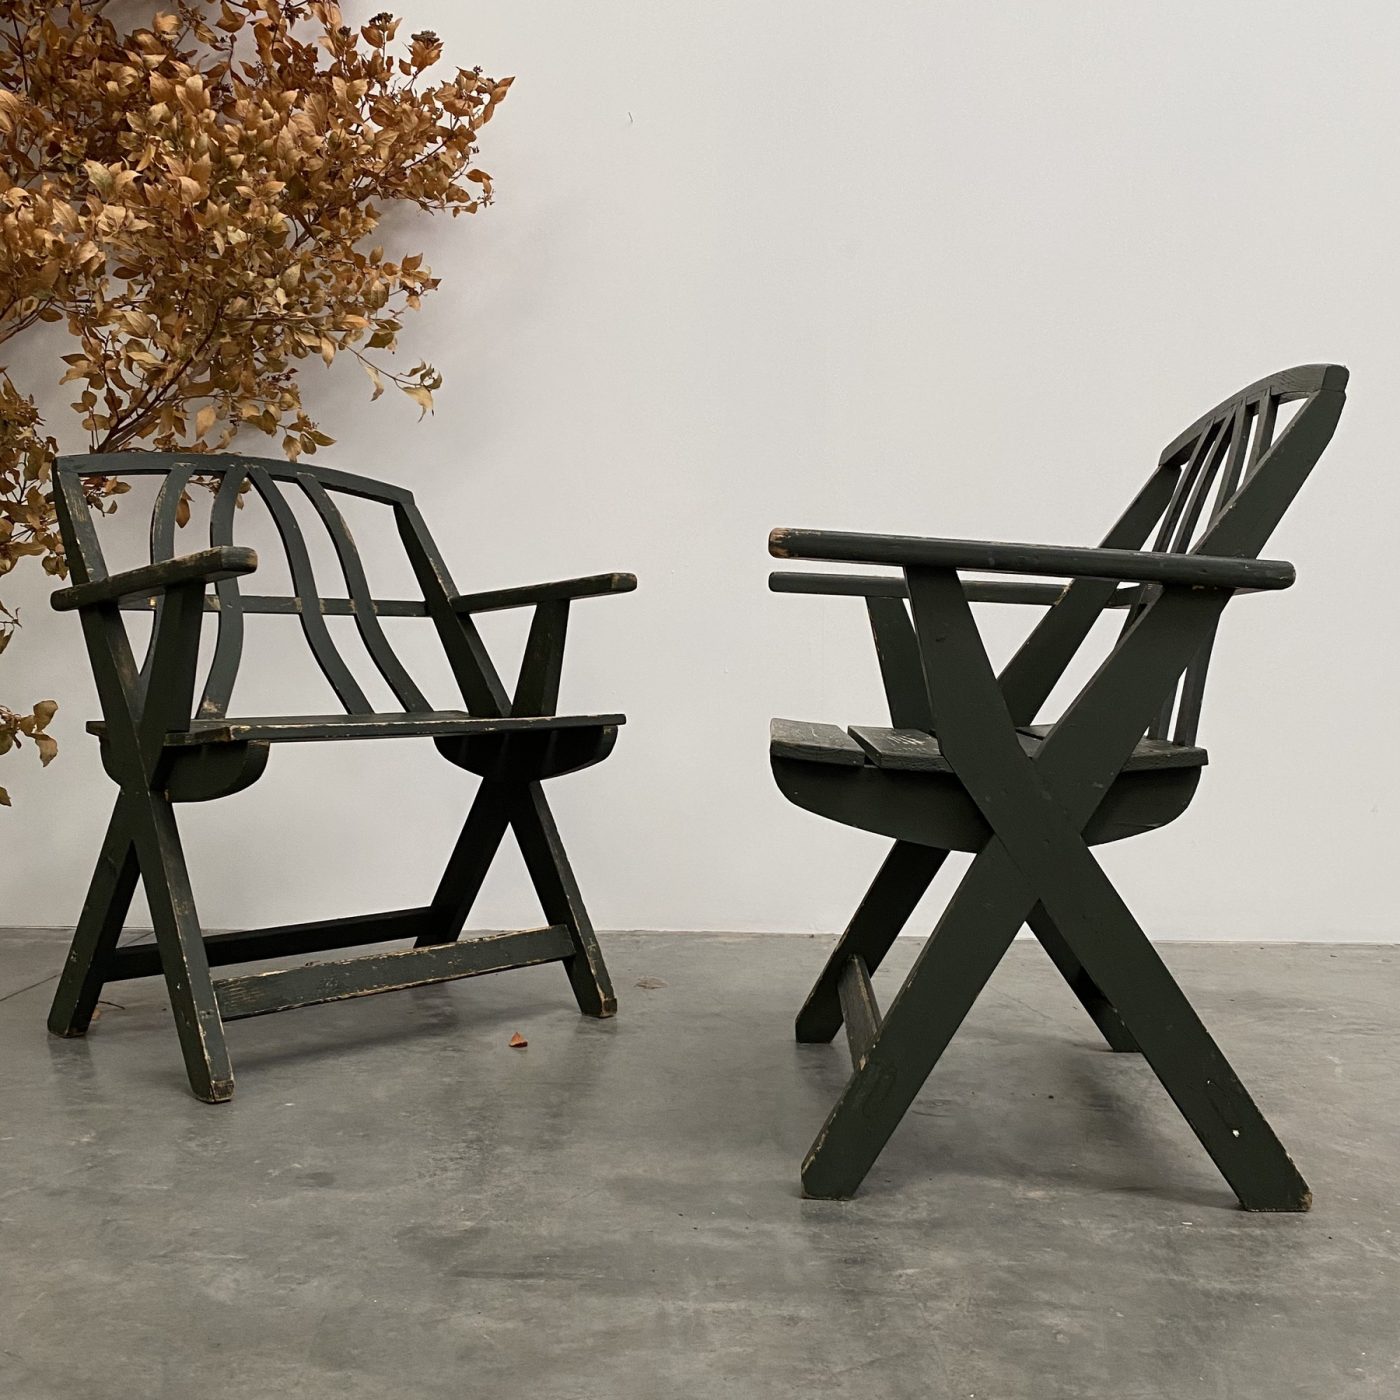 objet-vagabond-wooden-chairs0002